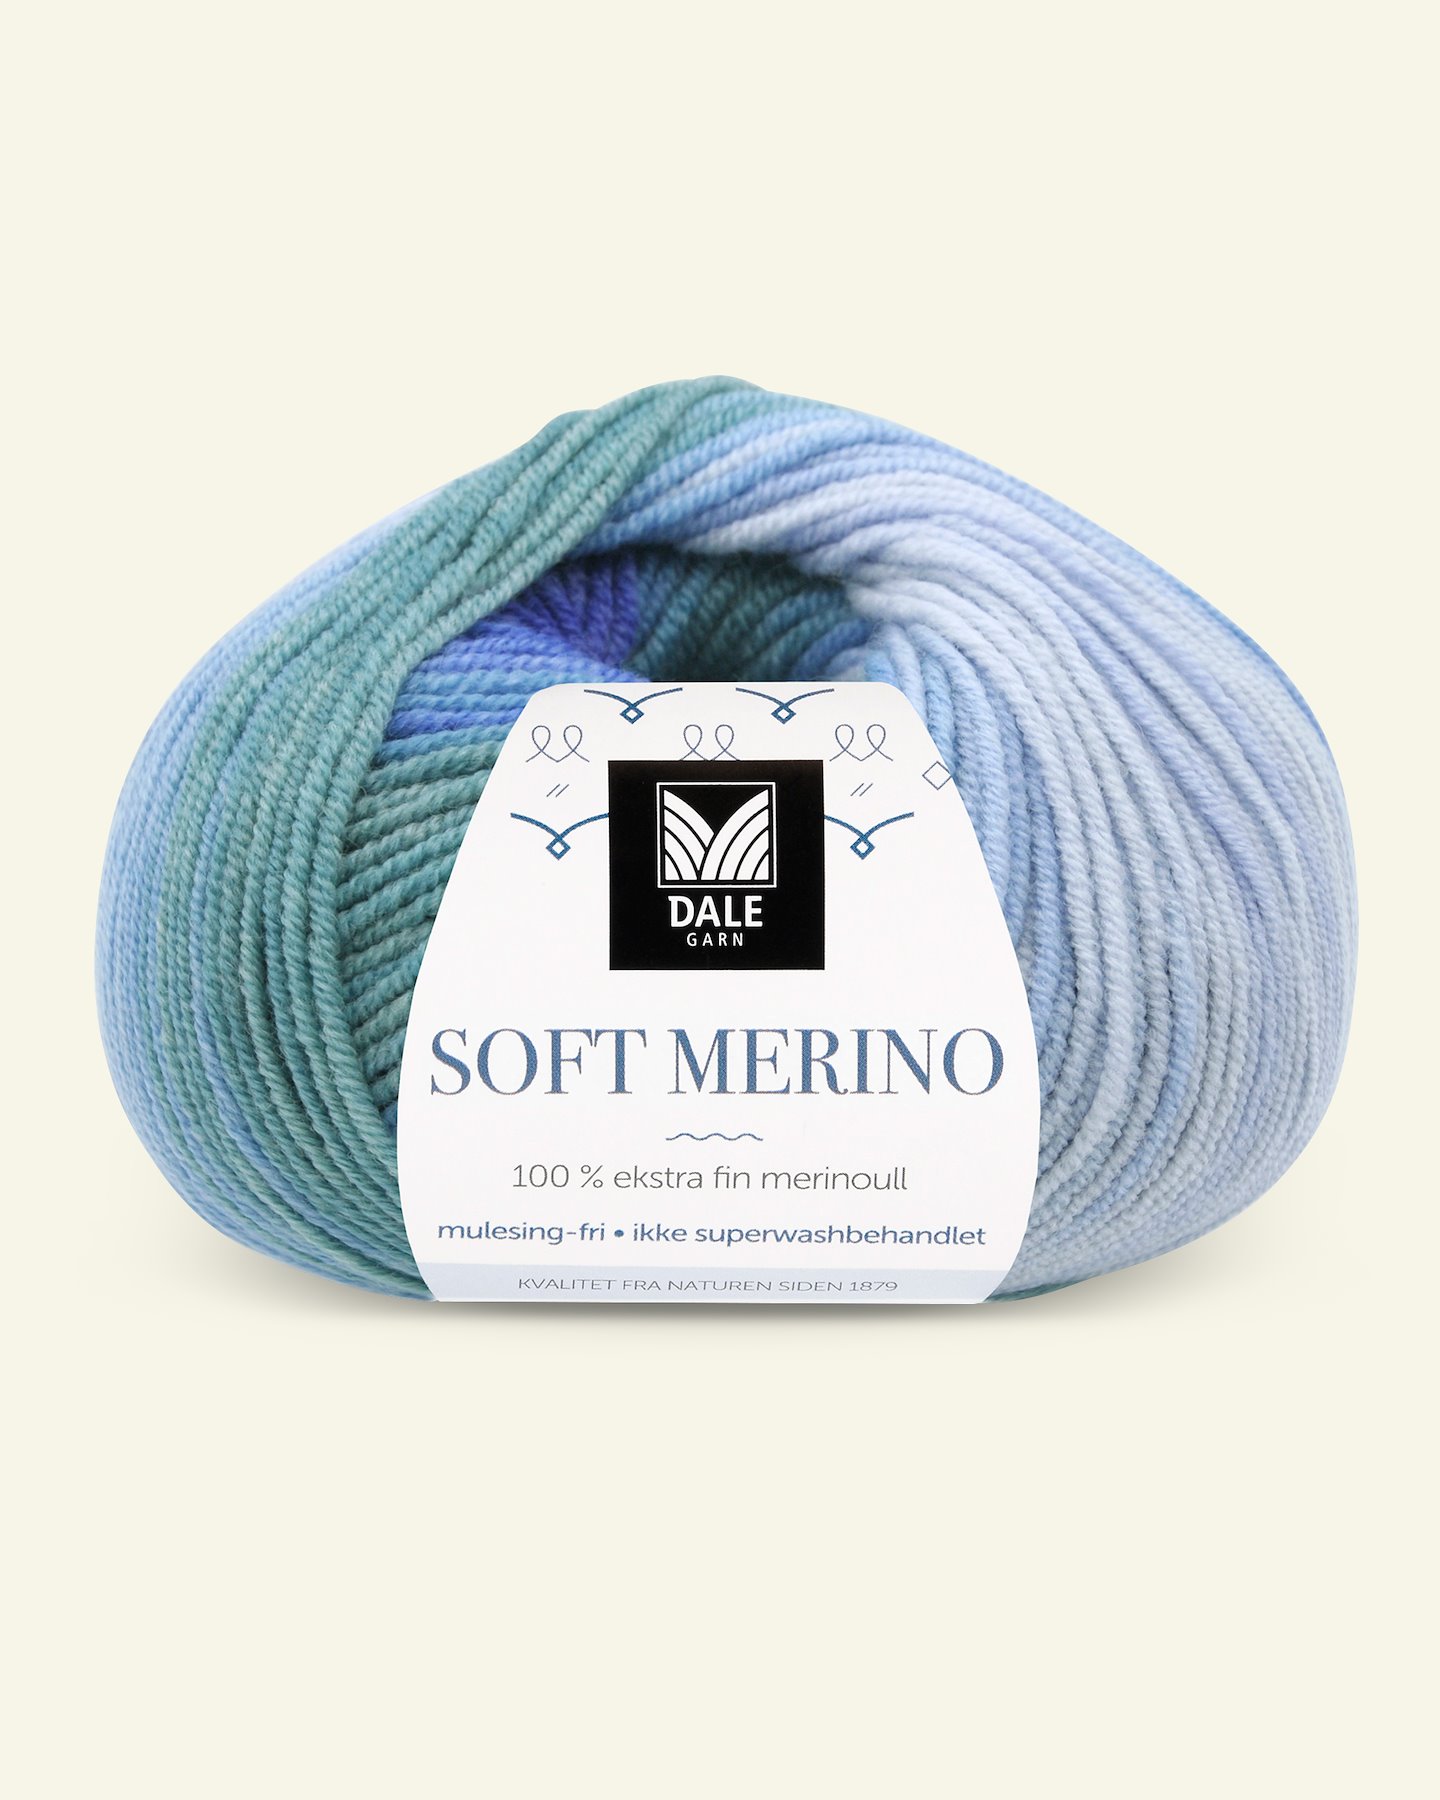 Dale Garn, 100% ekstra fint merinogarn "Soft Merino", Blå print 90001224_pack